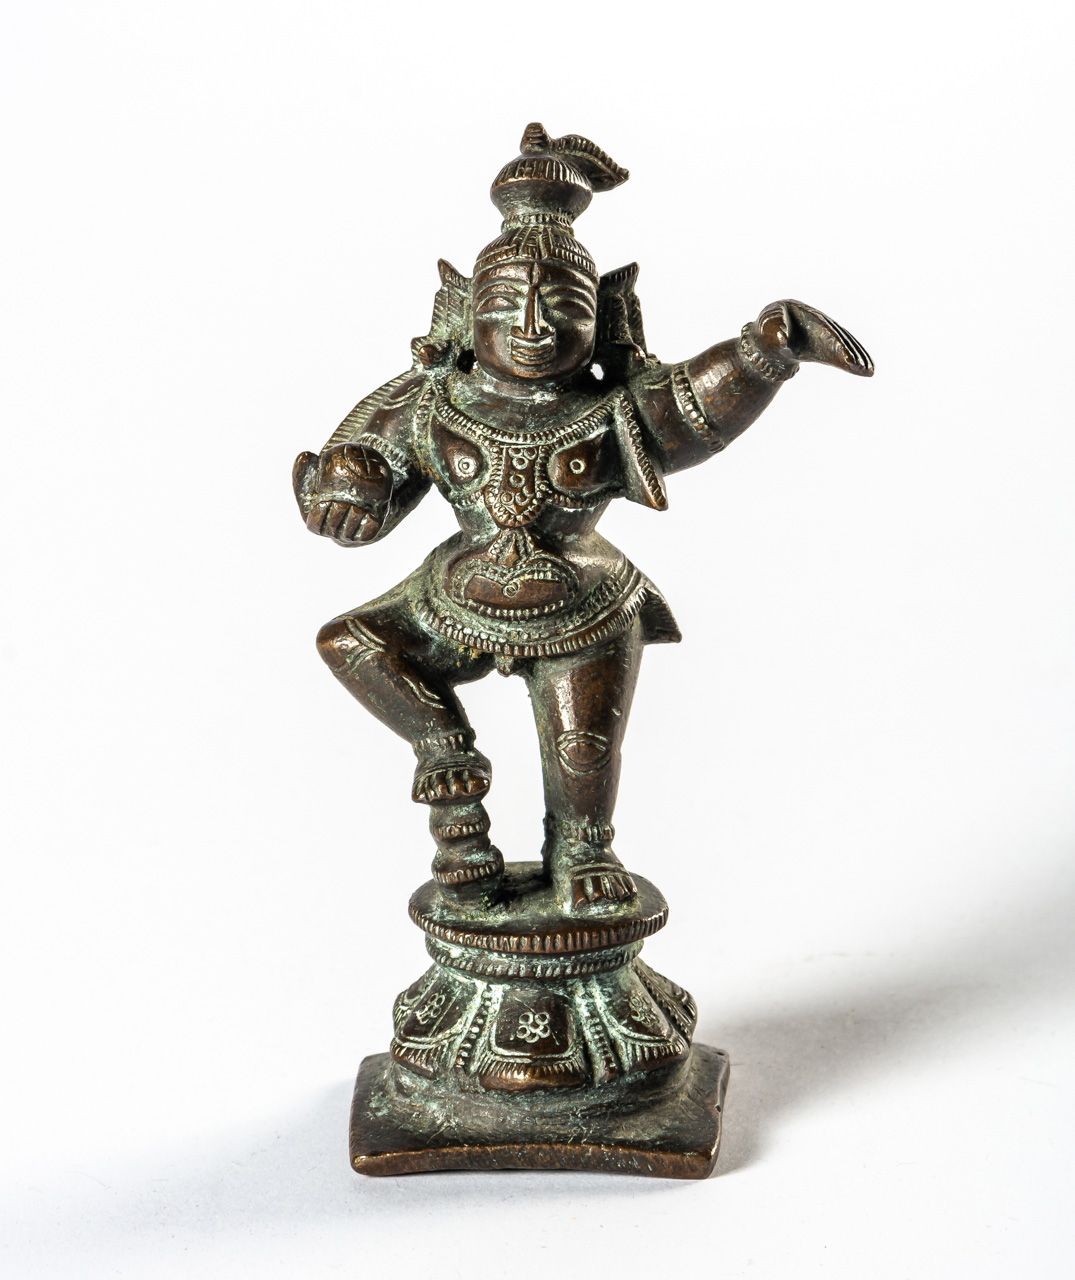 KRISHNA India, bronzo, probabilmente intorno al 1900

11 cm di altezza





UNA &hellip;